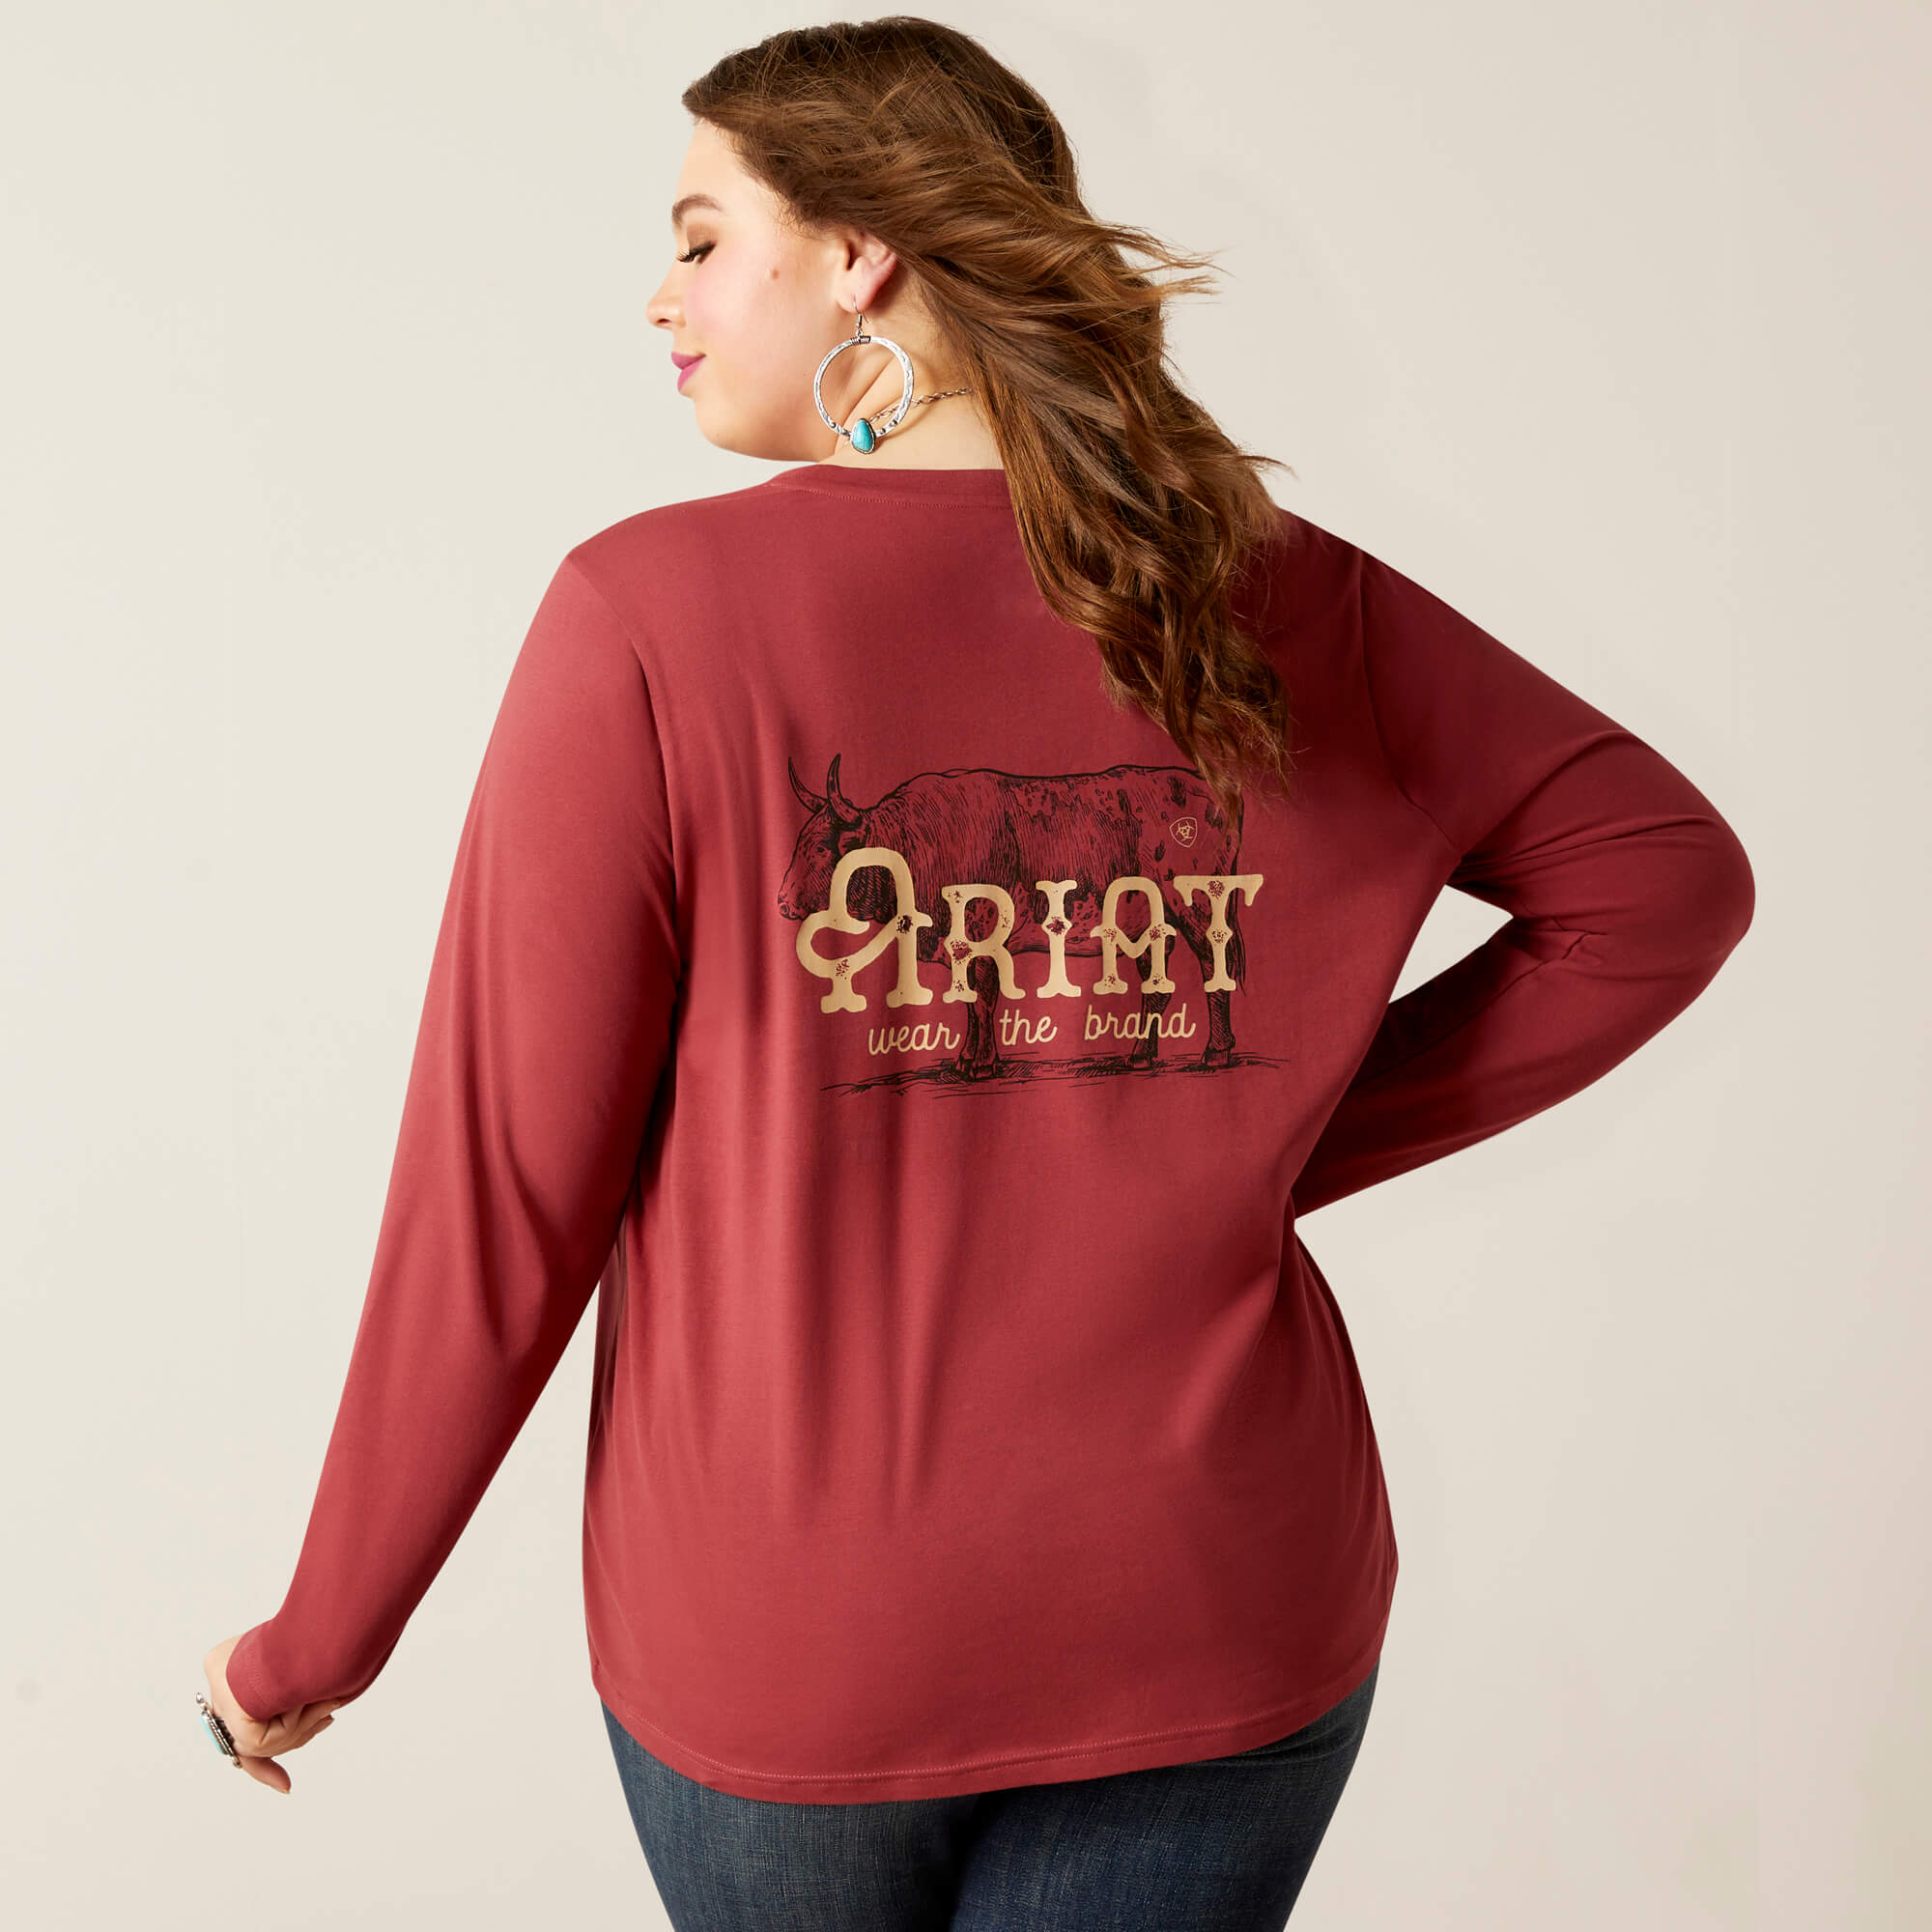 Ariat Women's Wear The Brand Long-Sleeve T-Shirt